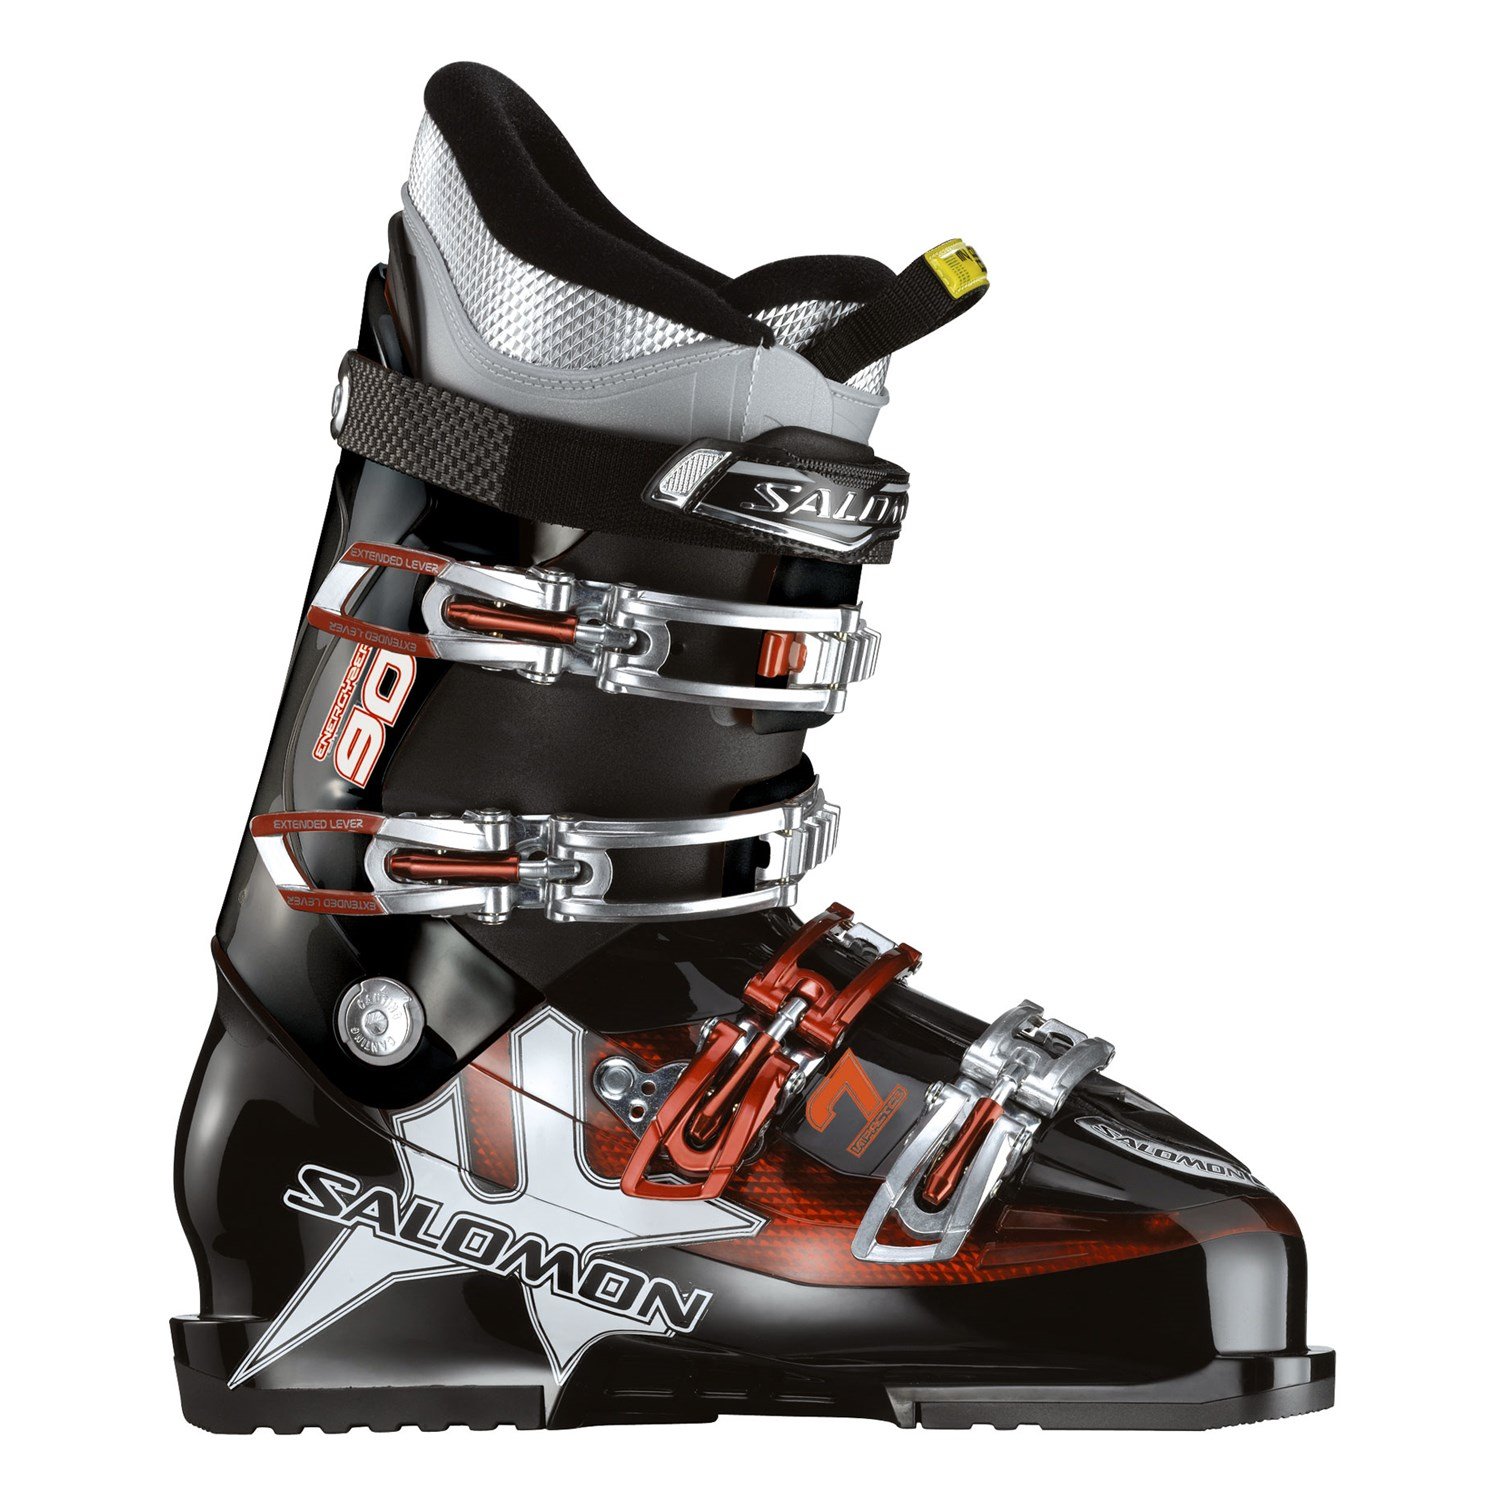 Salomon Impact 7 Ski Boots 2010 | evo